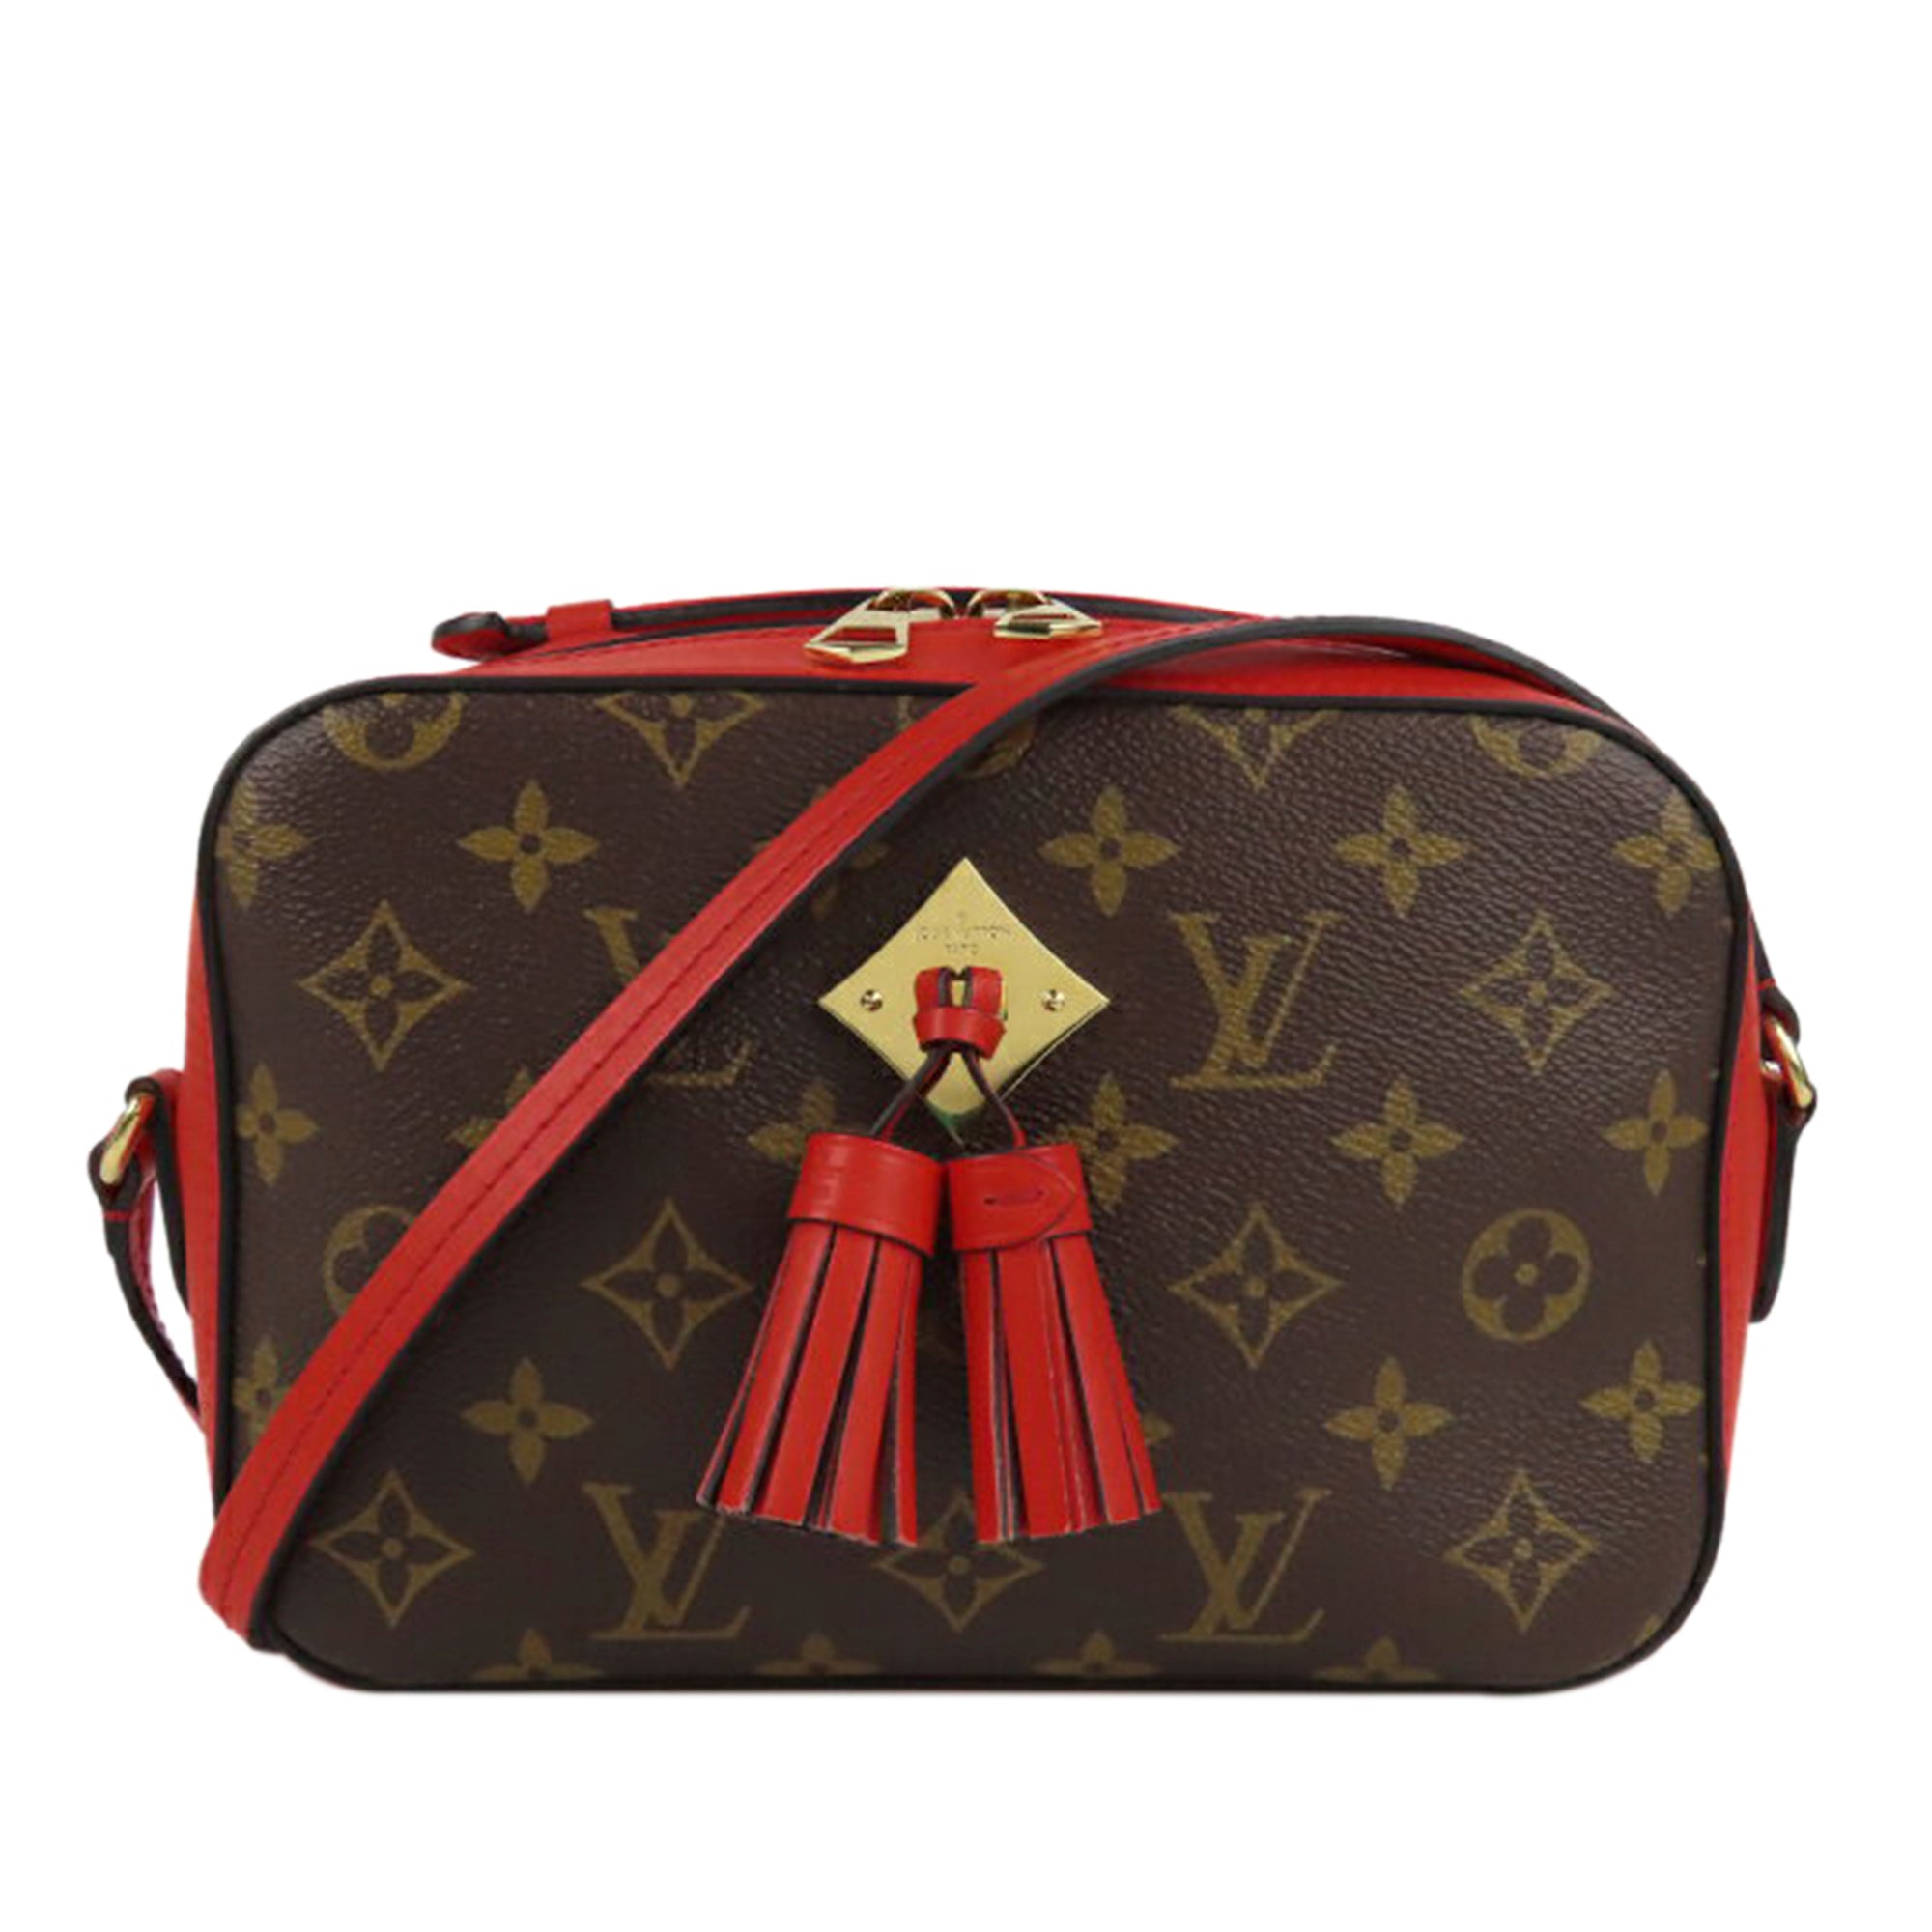 Louis Vuitton Saintonge Bag Review